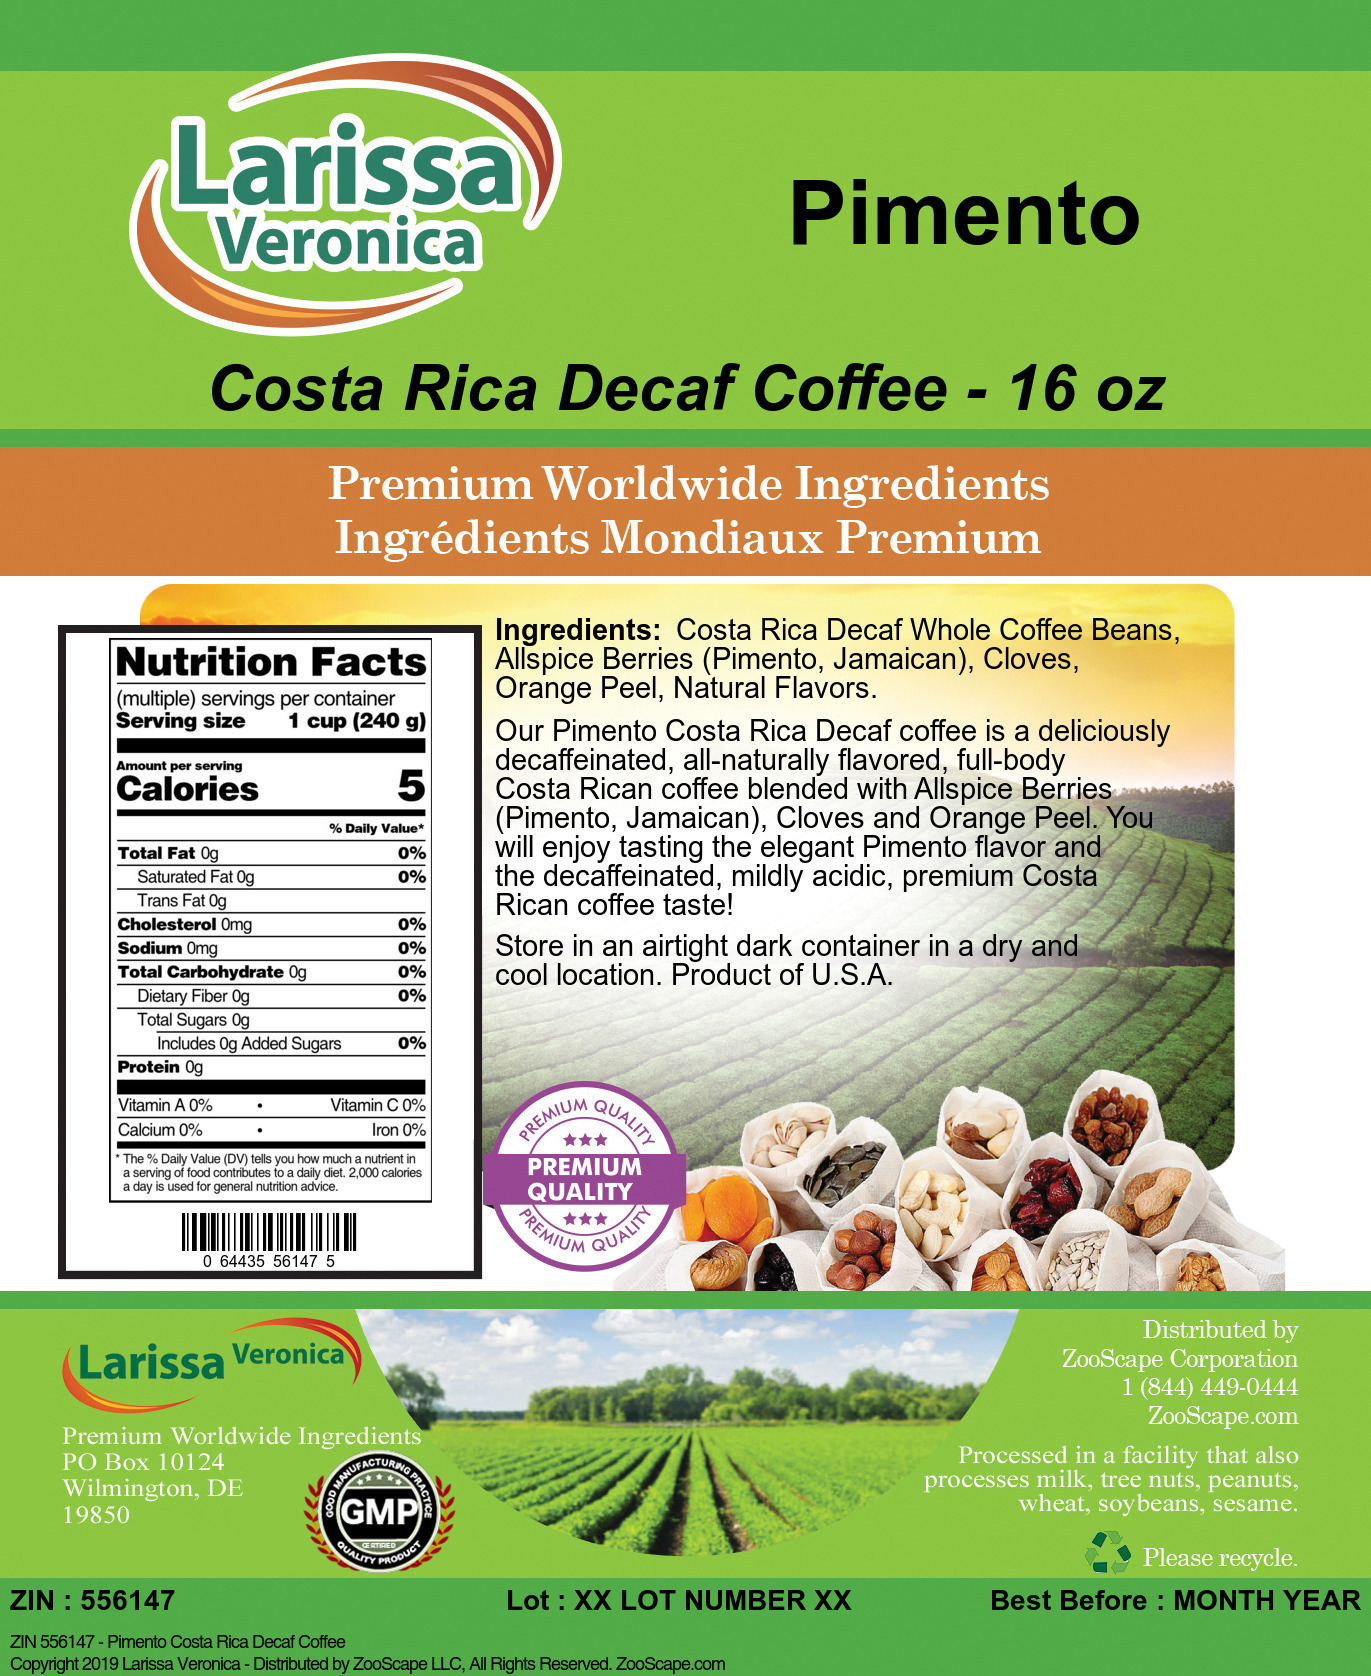 Pimento Costa Rica Decaf Coffee - Label